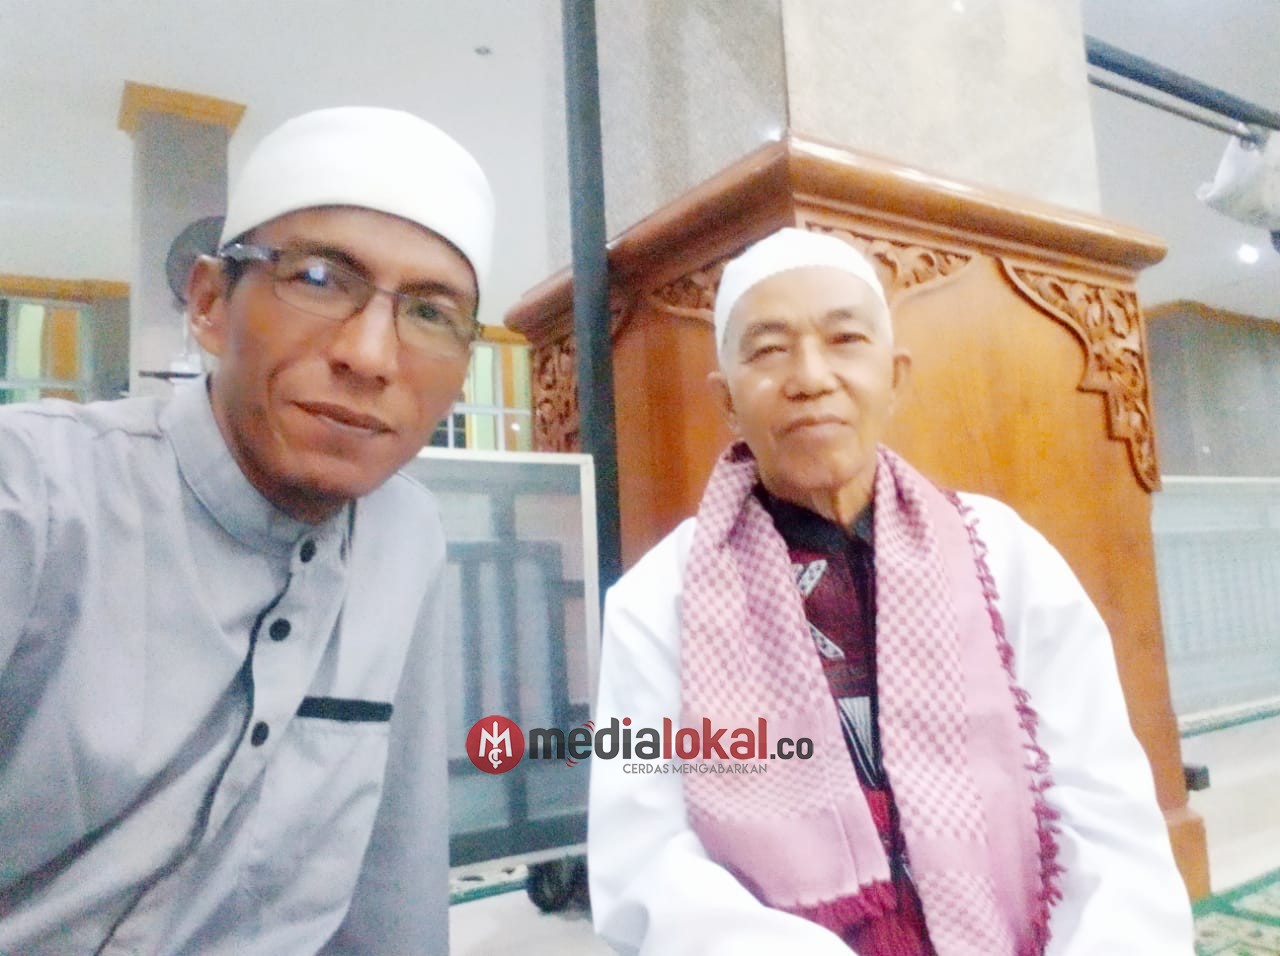 Berita Duka, Imam Besar Mesjid Raya Baitul Makmur Tanjung Uban Meninggal Dunia